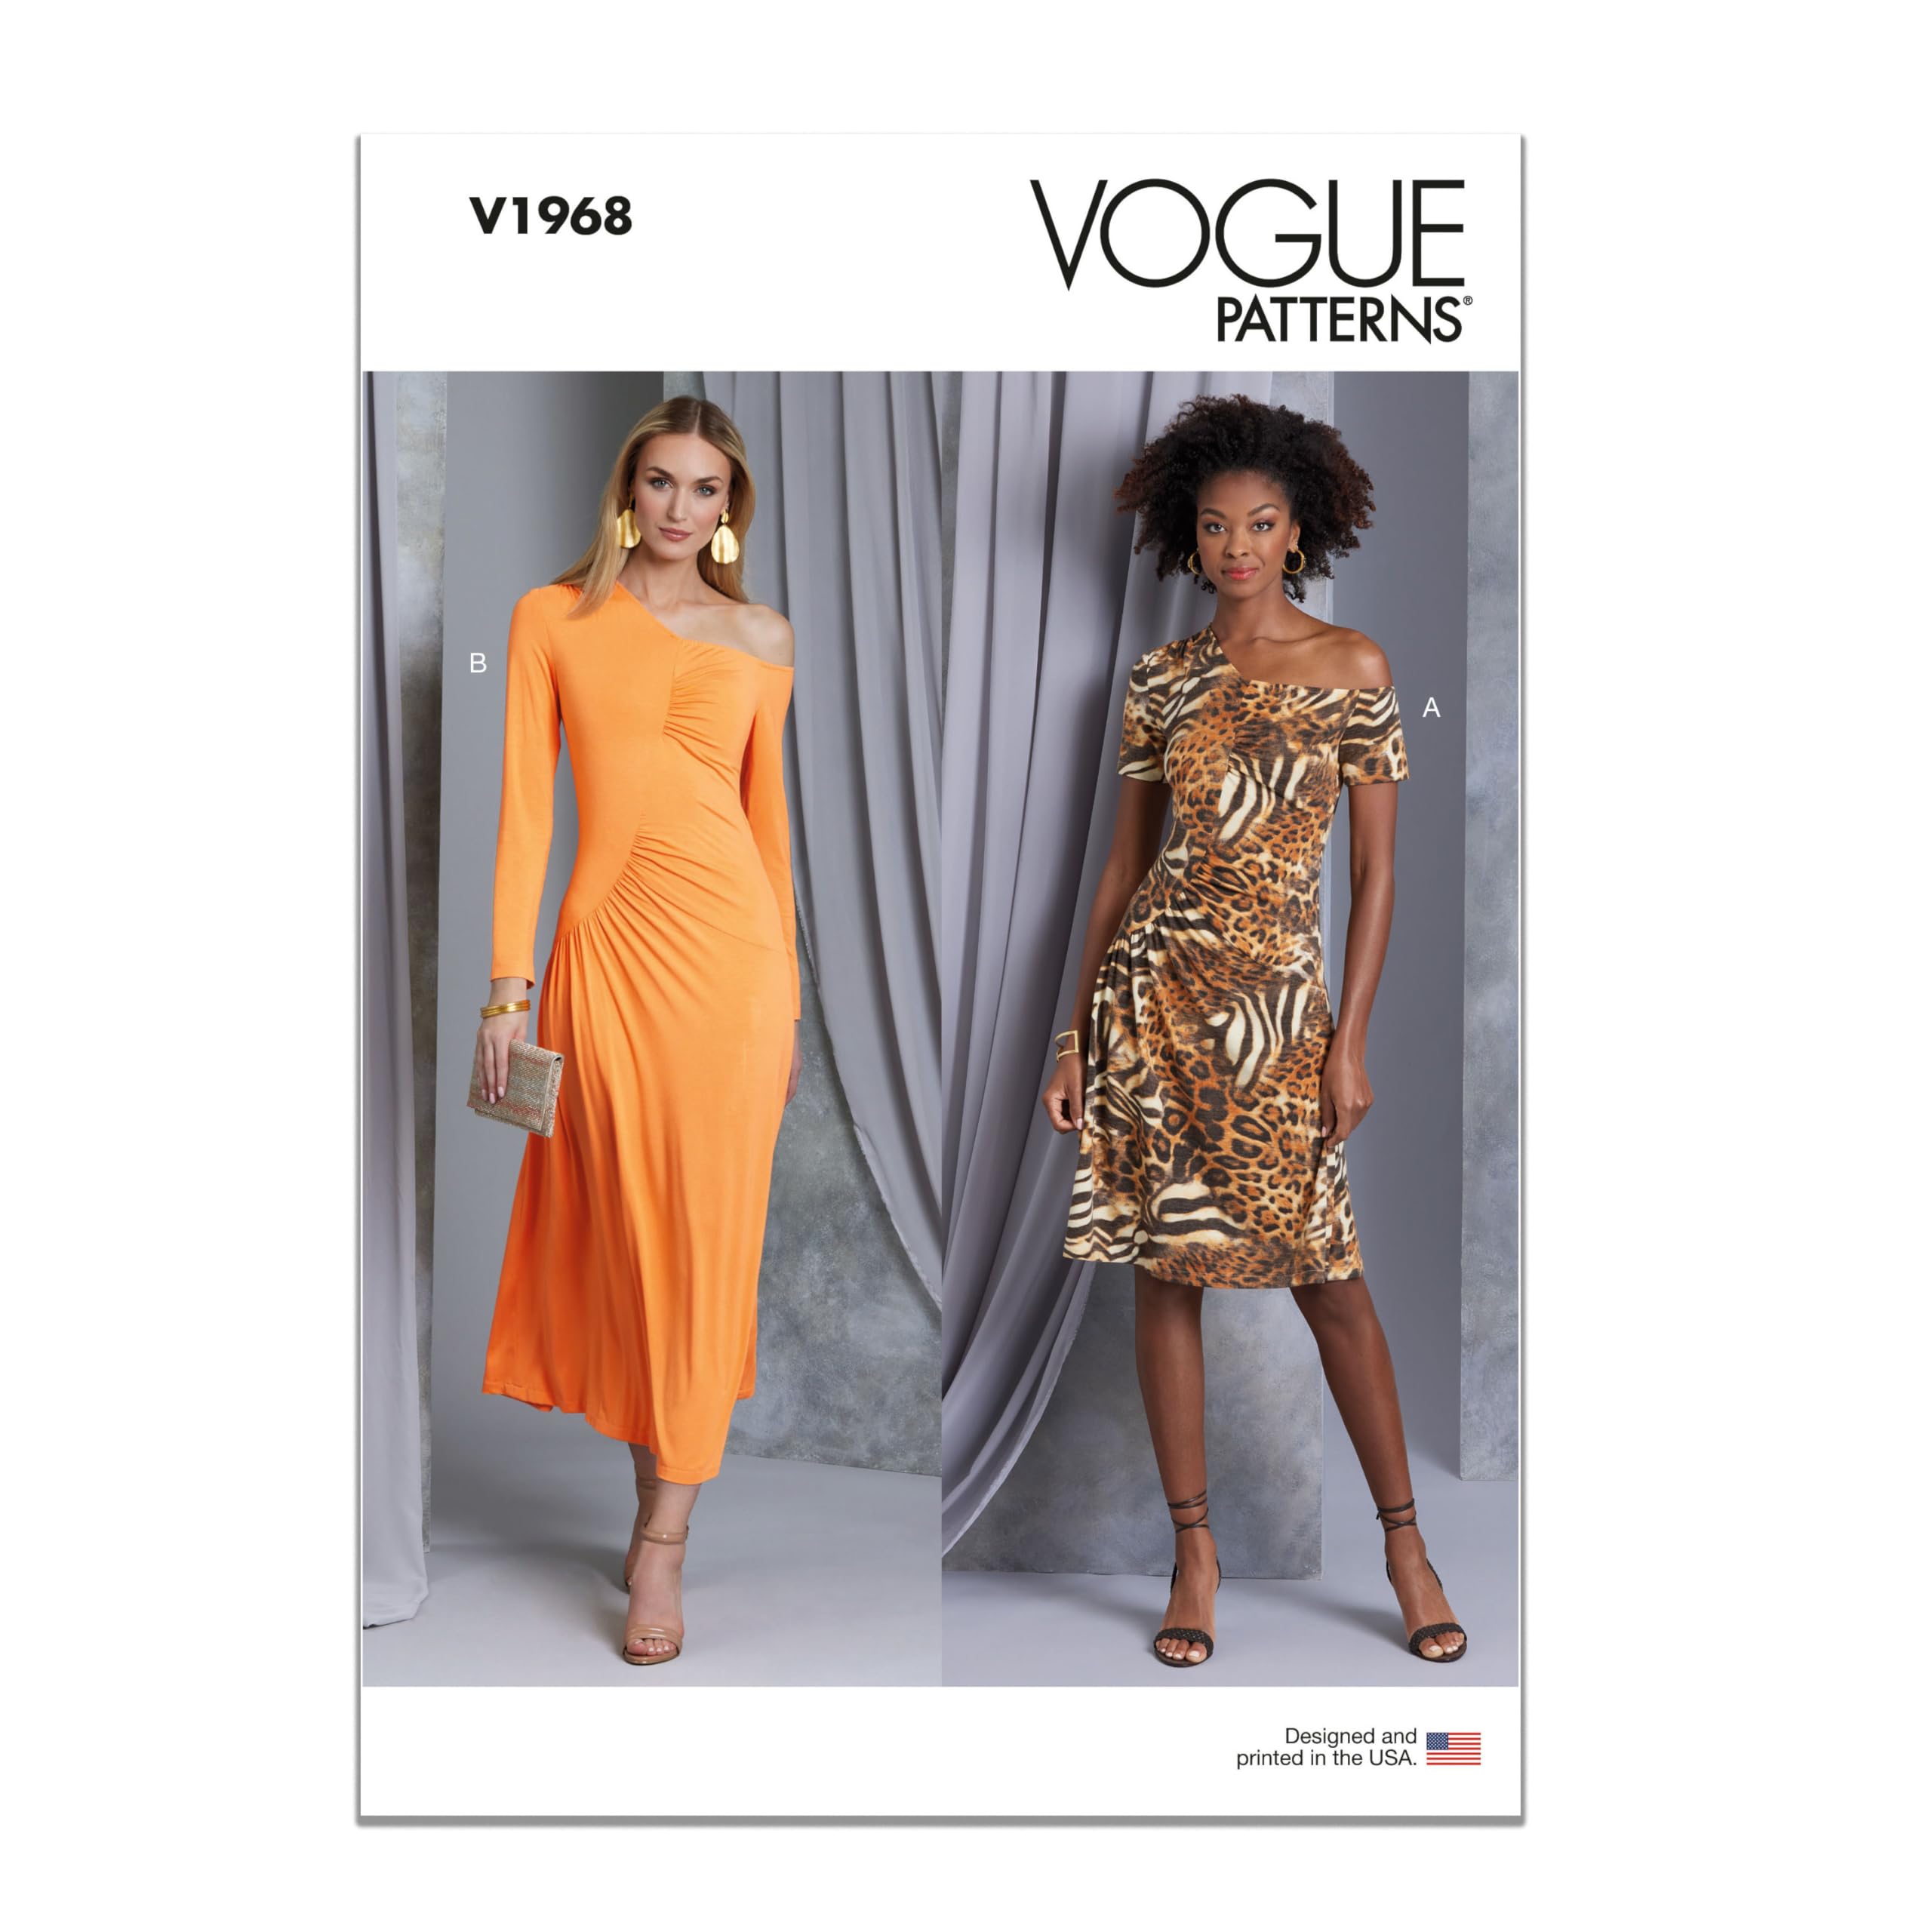 Vogue V1968Y5 Damen-Strickkleider Y5 (46-50-52)